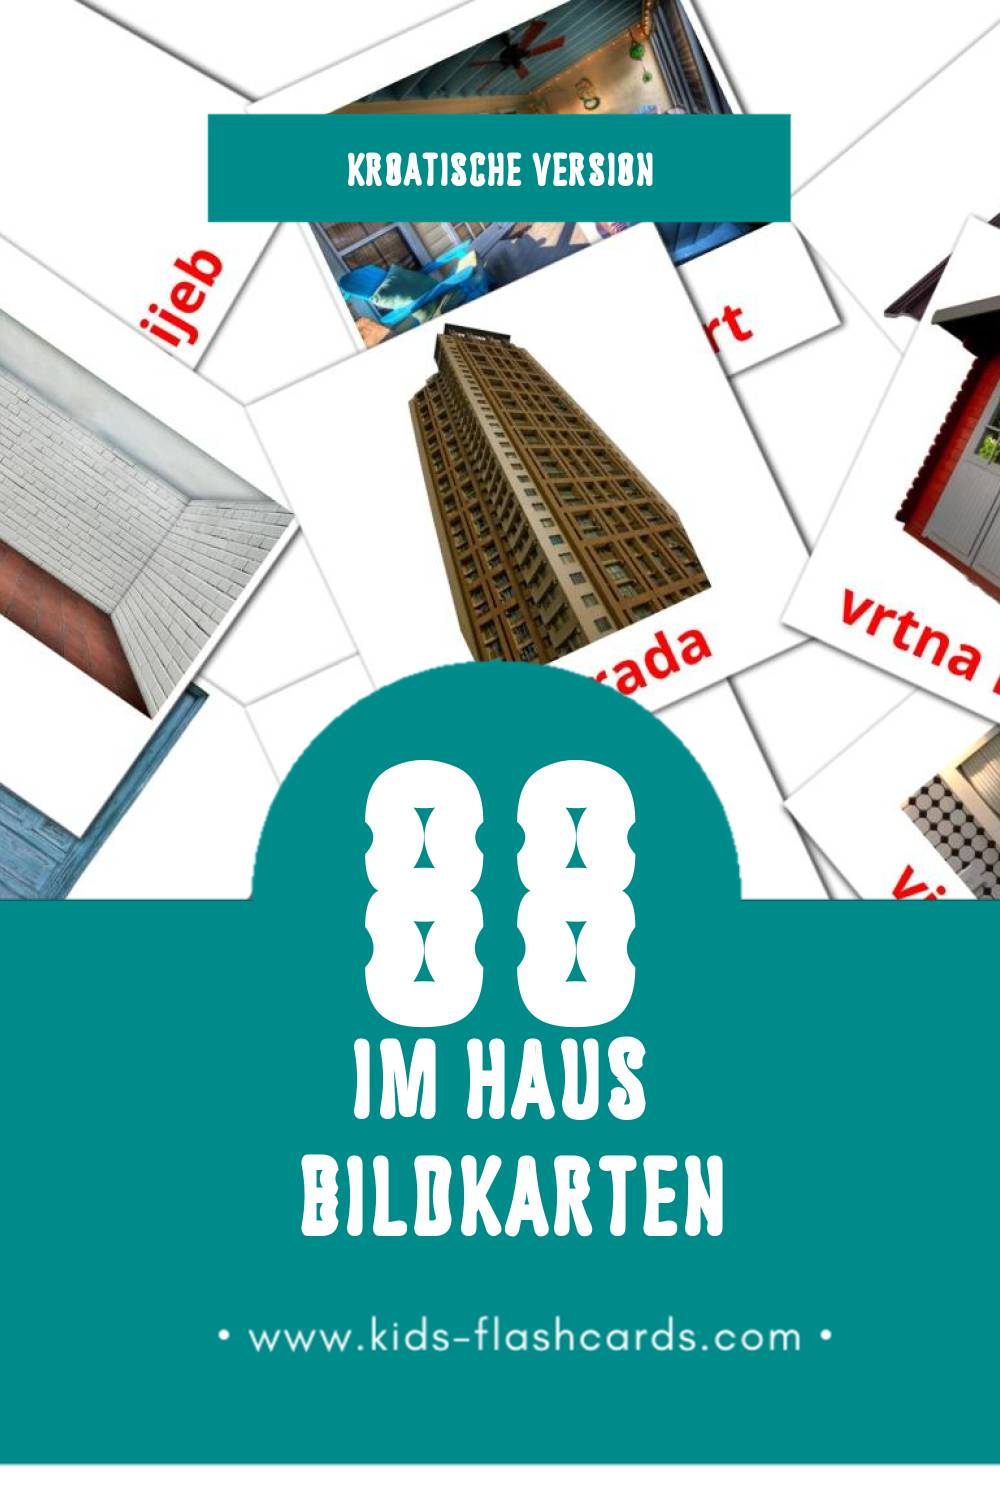 Visual Kuća Flashcards für Kleinkinder (91 Karten in Kroatisch)